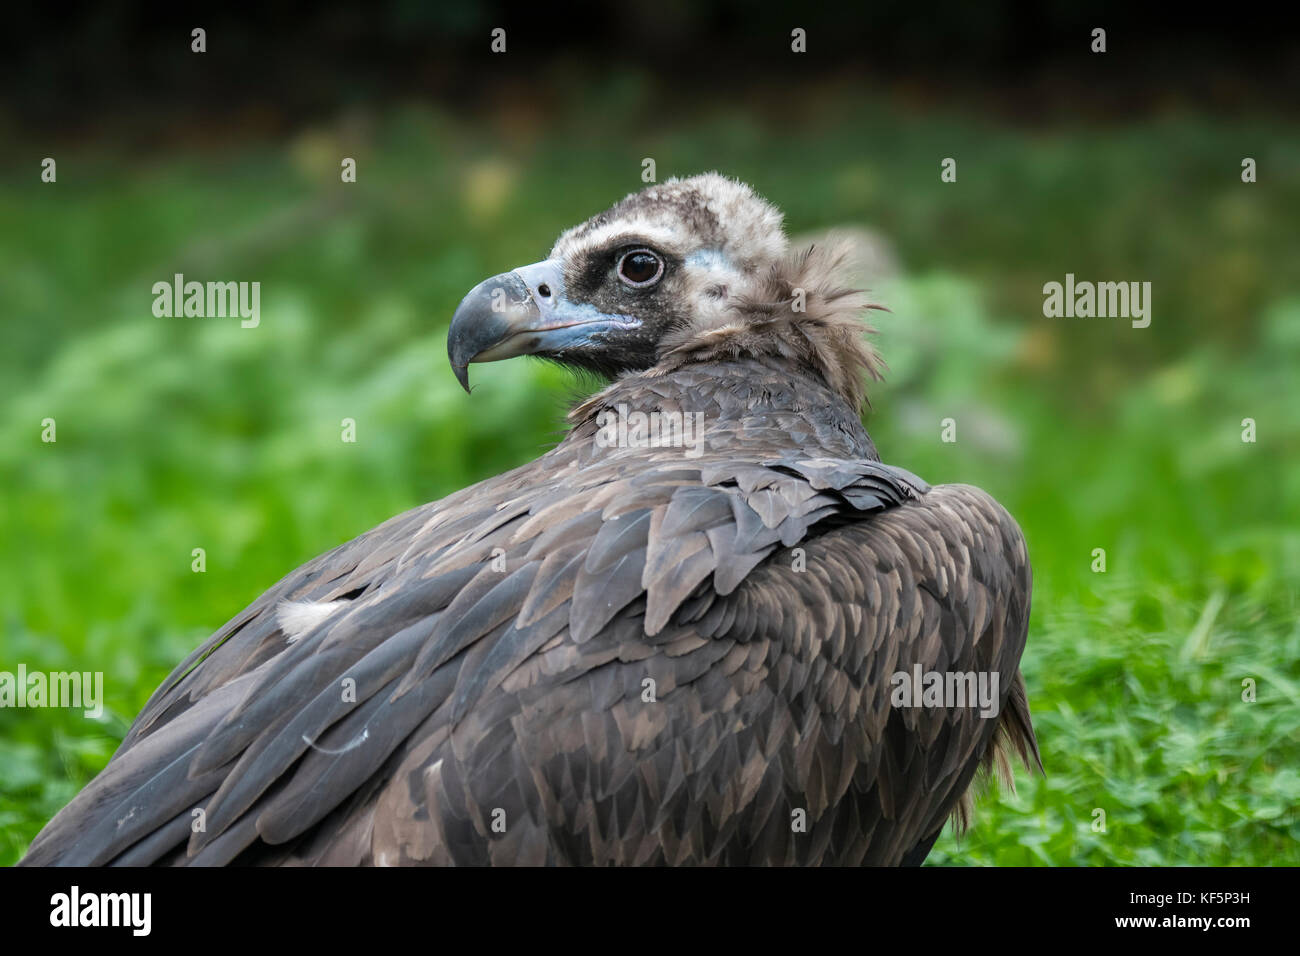 Cinereous vulture / monk vulture / Eurasian black vulture (Aegypius monachus) close up portrait Stock Photo